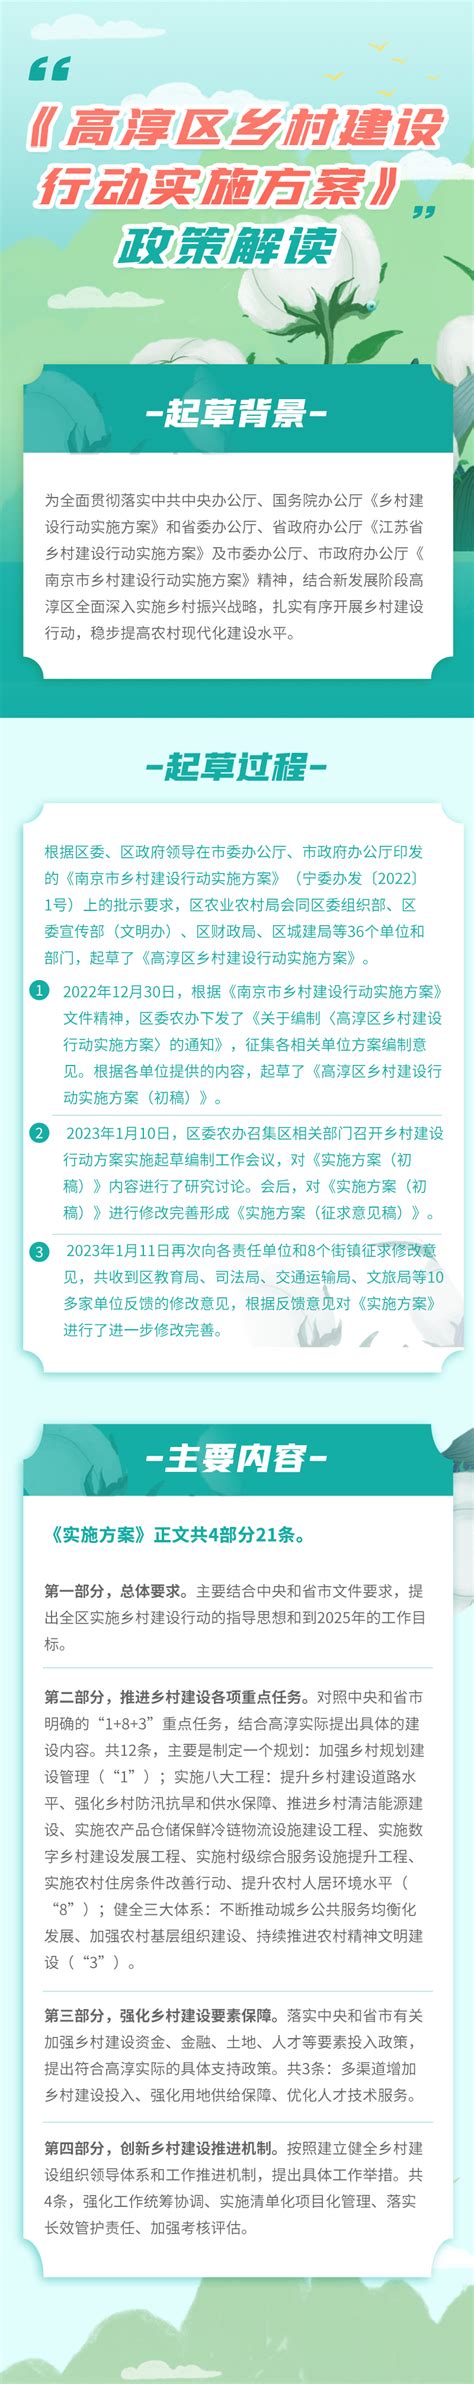 桂林市城乡规划管理条例最新修订 - 地方条例 - 律科网